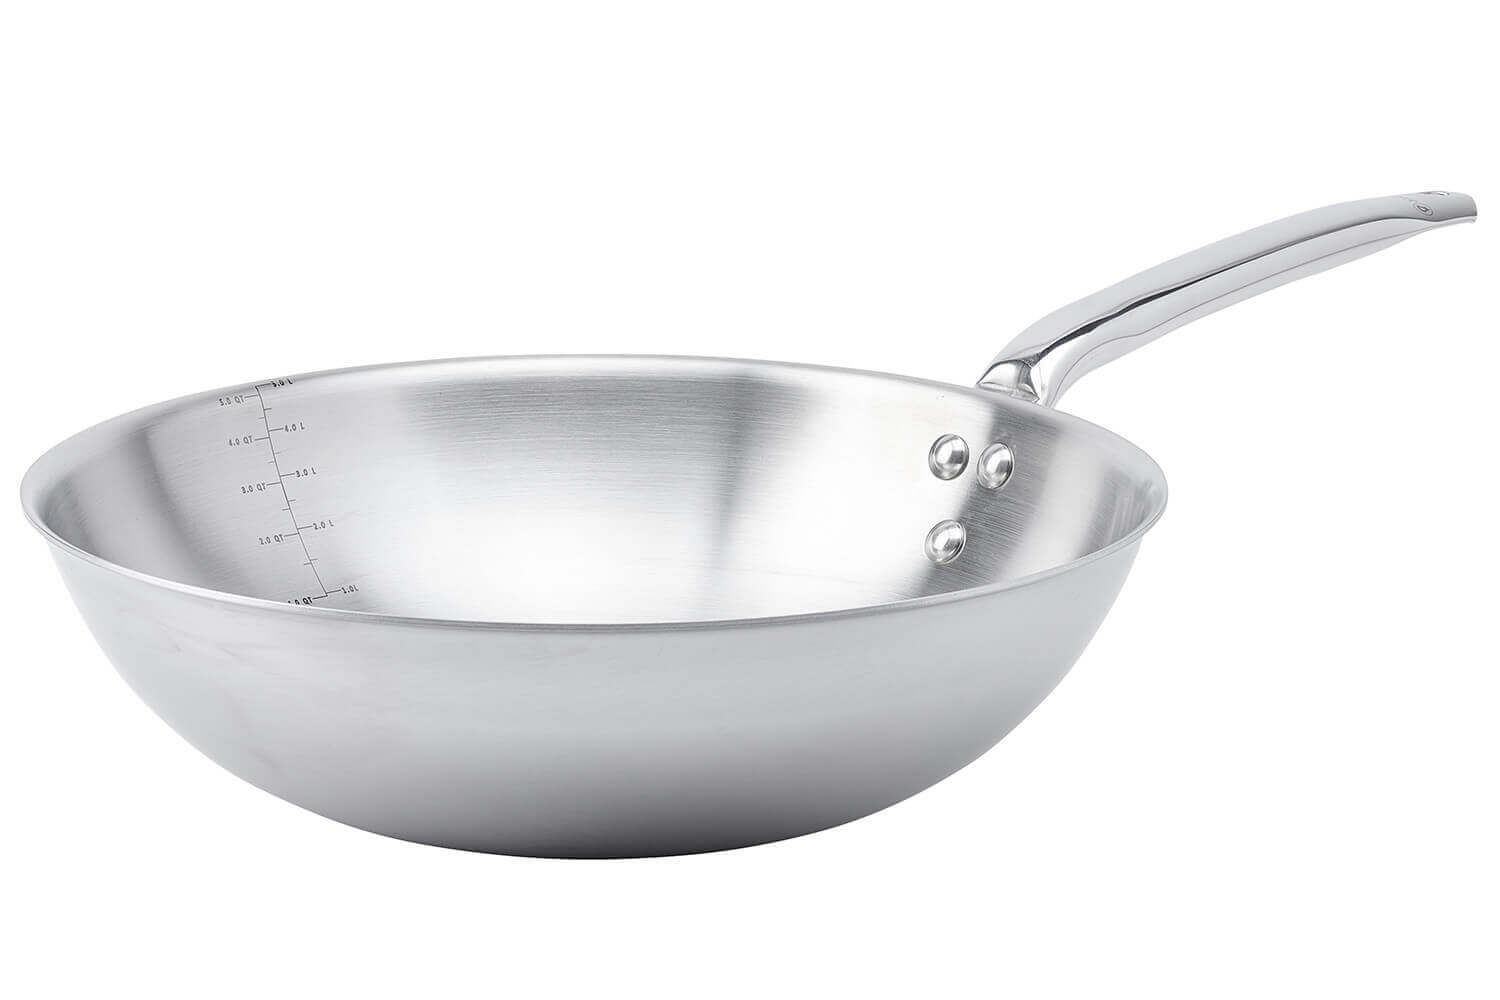 Premium cuiseur wok - 2 x 28,5 cm anneaux de cuisson - unité double -  profondeur 90 cm - gaz - Maxima